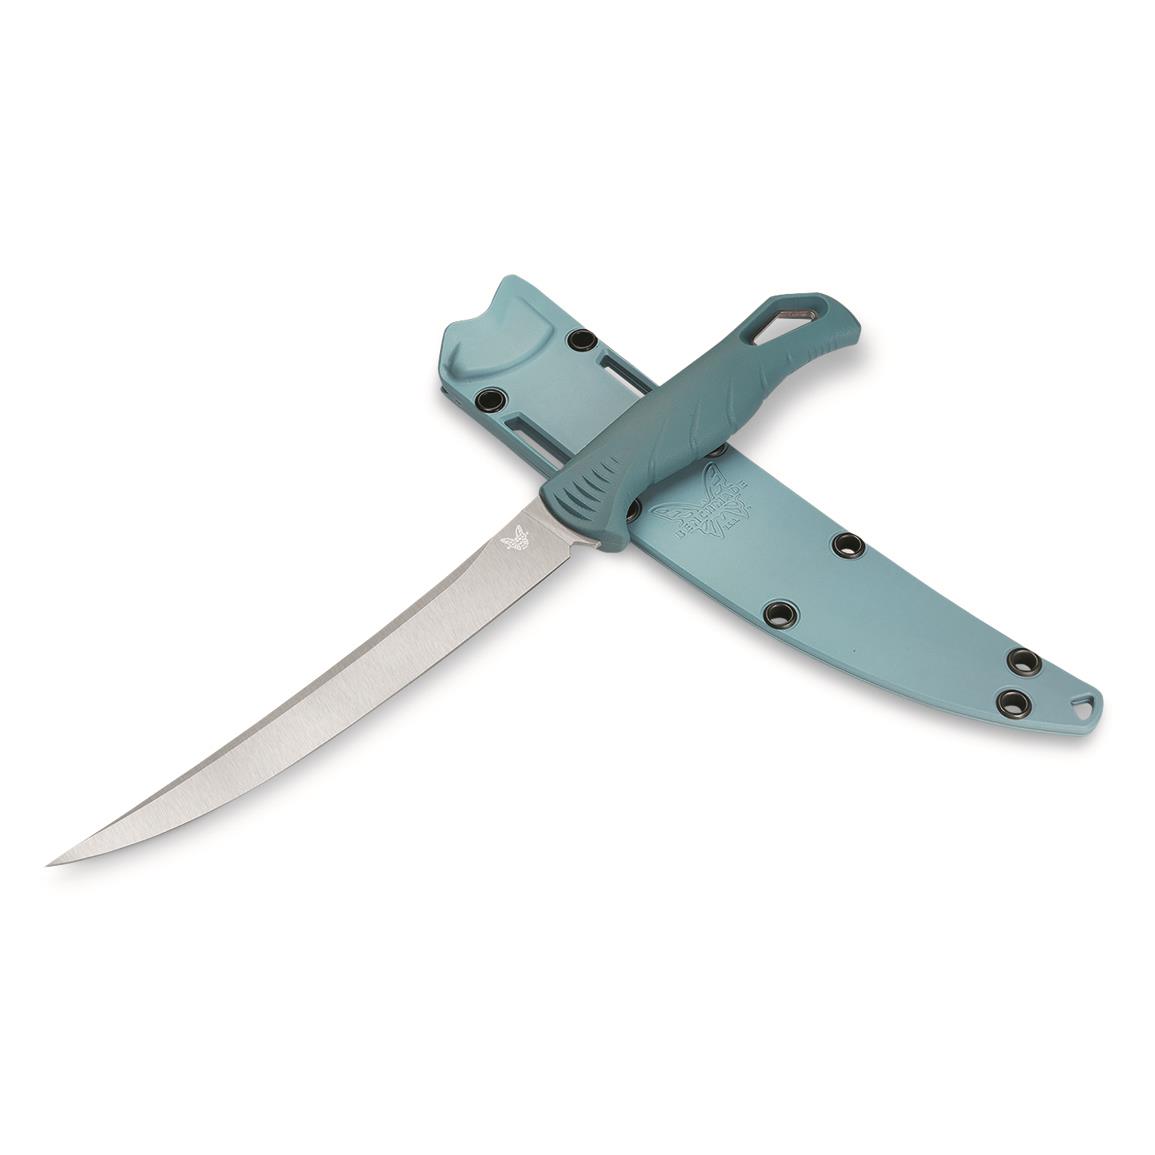 PENN 8 Standard Flex Fillet Knife - 726926, Fillet Knives at